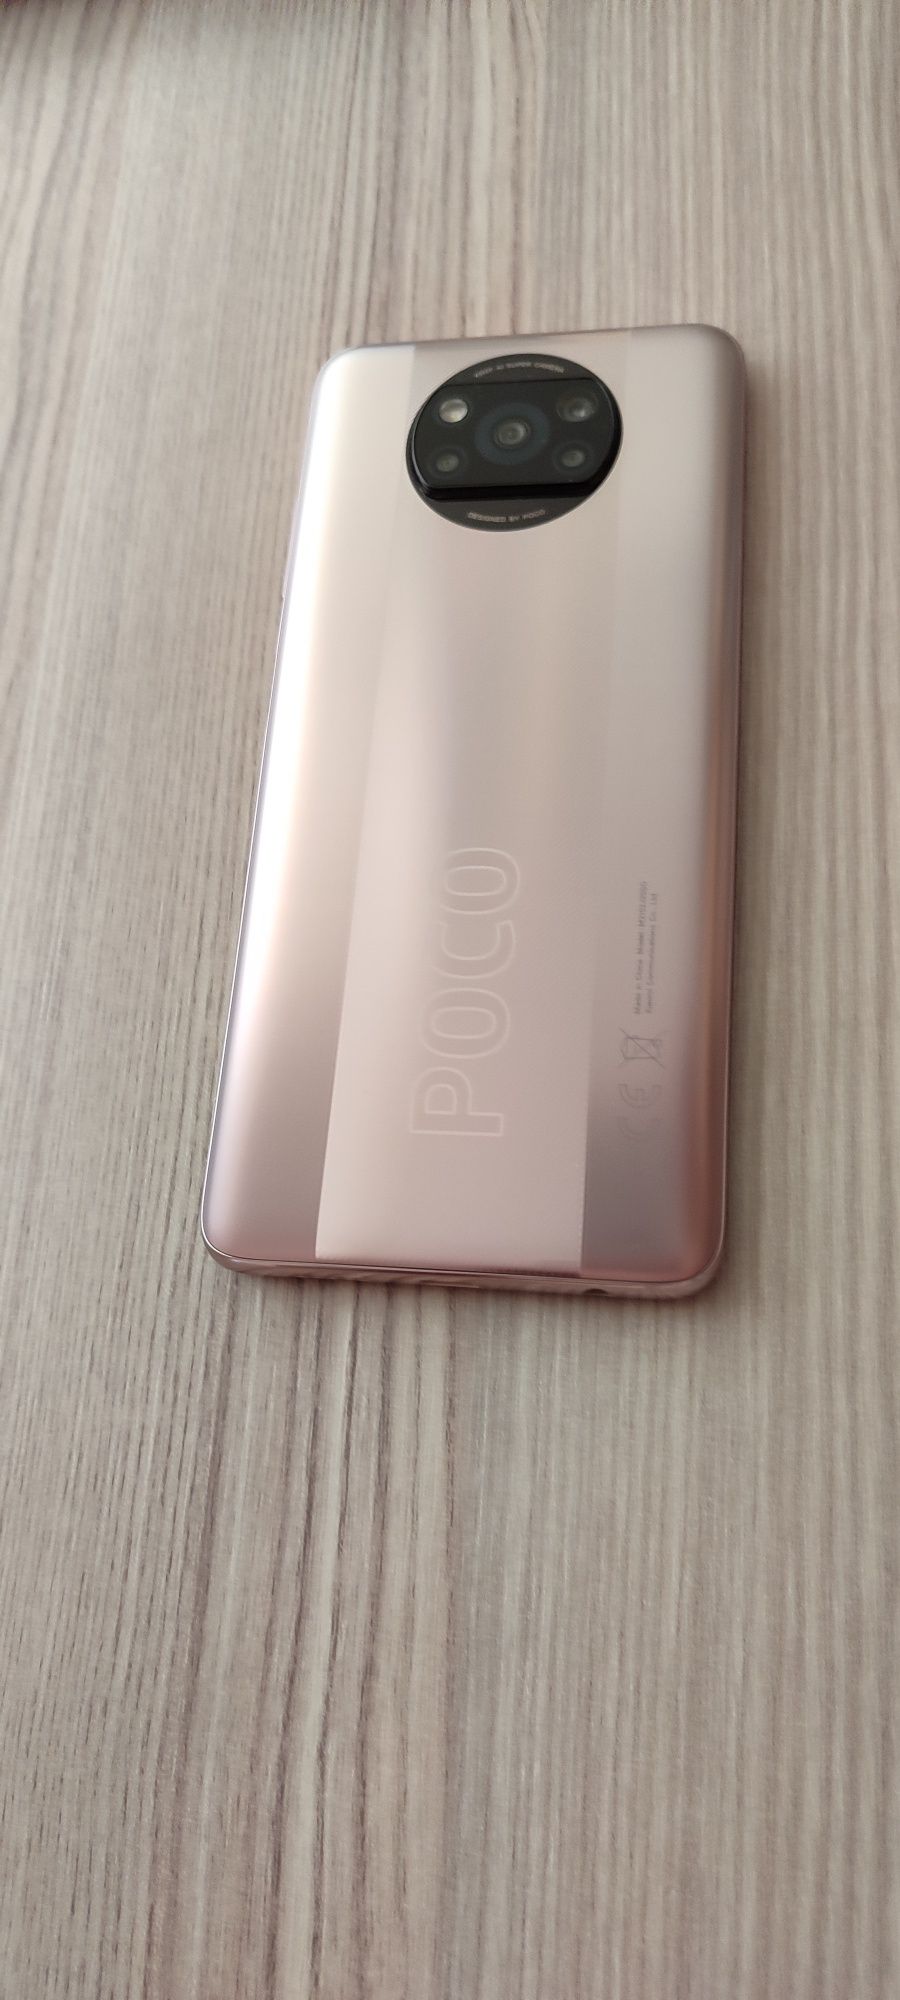 Смартфон Poko X3 Pro 8gb/256